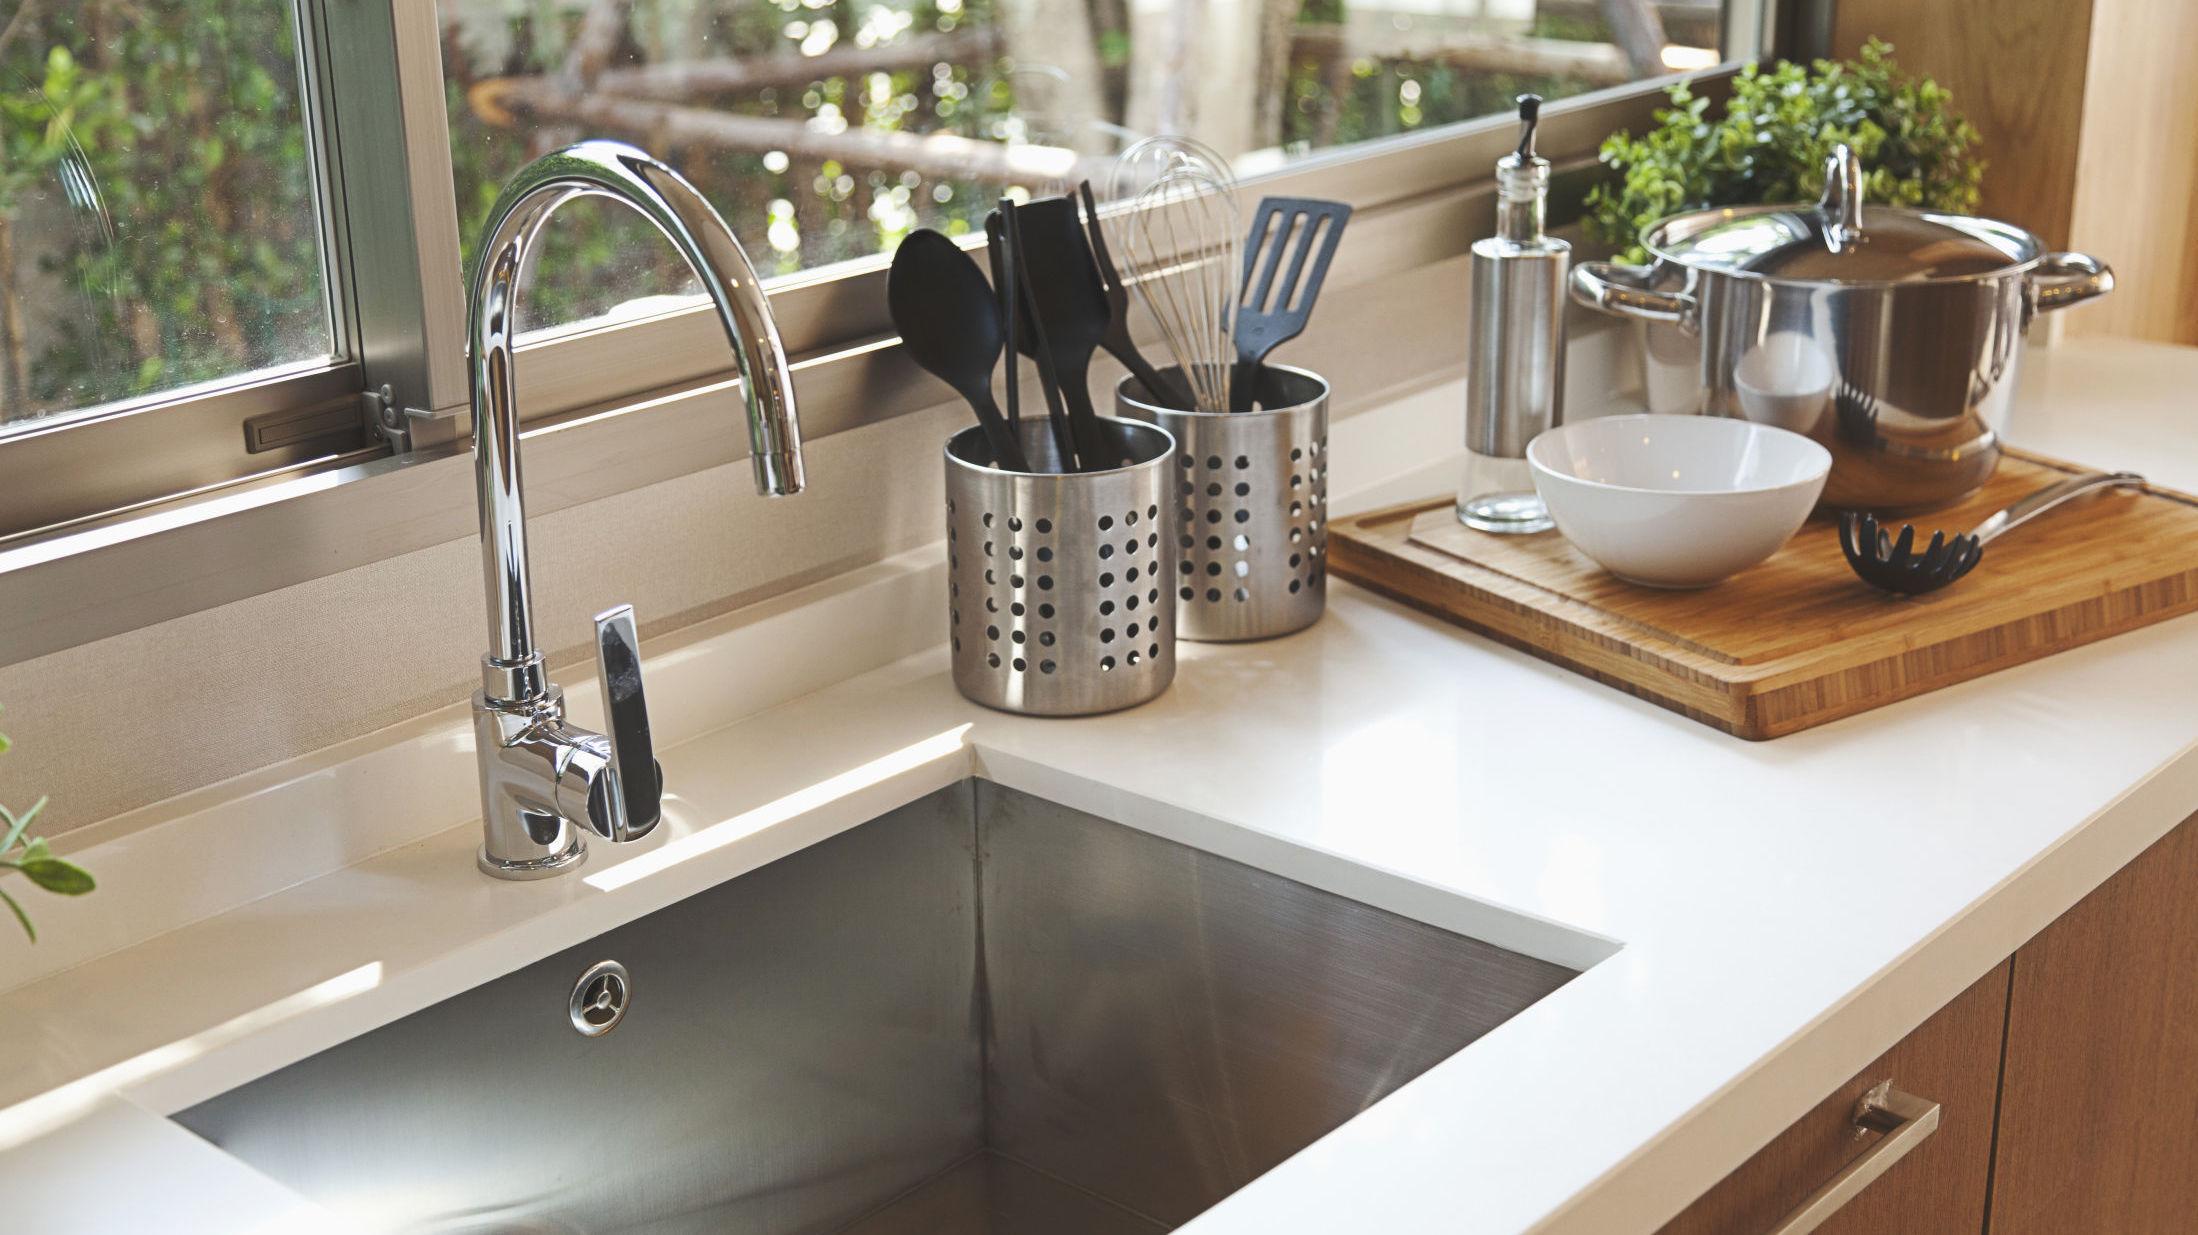 KLAR TIL BRUK: Med noen grep kan du enkelt holde kjøkkenet ryddig nesten hele tiden. Foto: Shutterstock / NTB scanpix